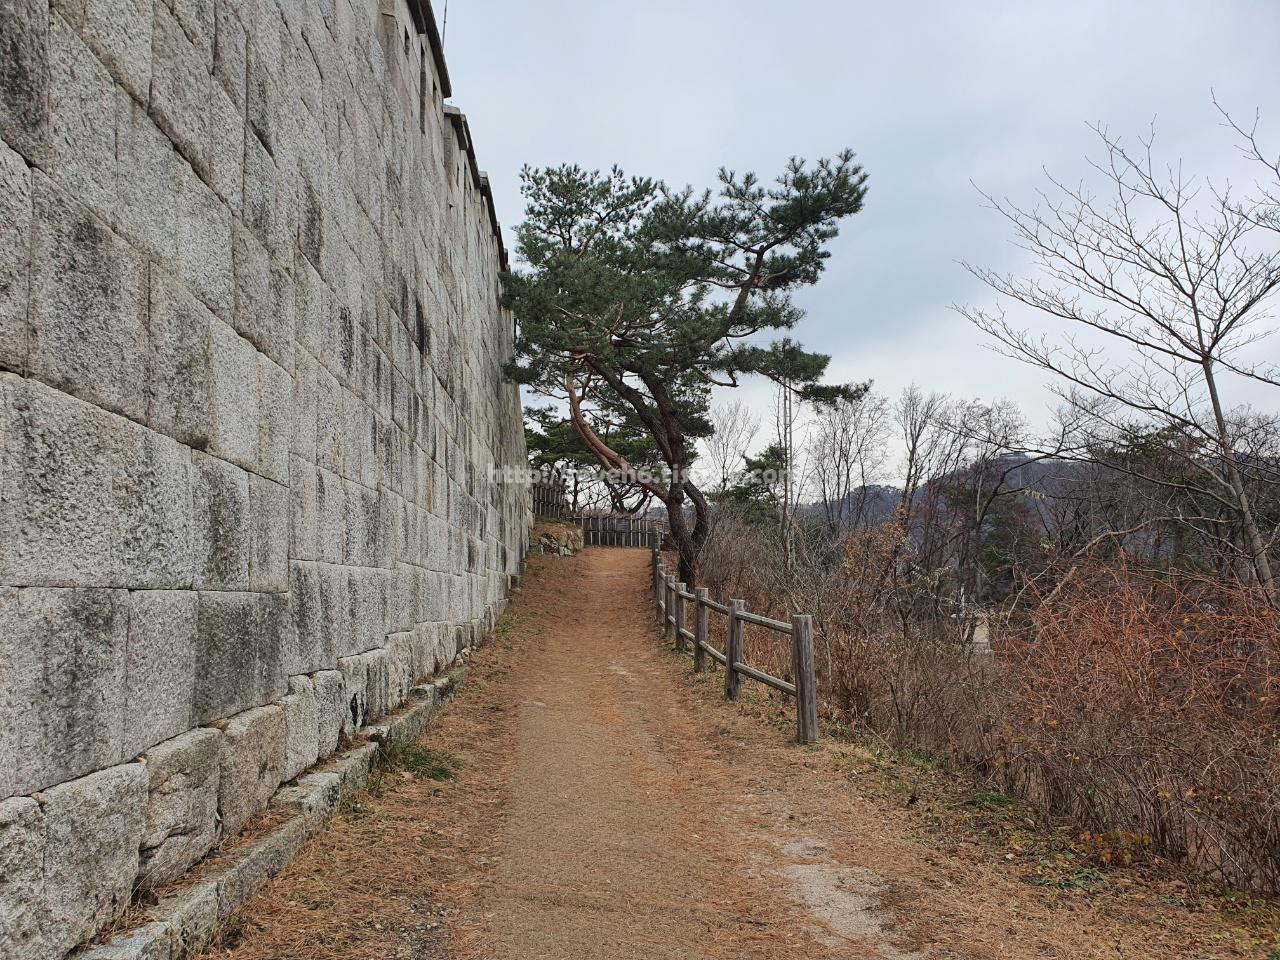 북악산_北岳山_Bukaksan/ 길이 은근 예뻤어요 왼쪽으로는 성벽이 오른쪽으로는 나무들과 울타리가 있습니다 조금 걷다가 힘들다고 느껴질때쯤 벤치가 있어서 아주 기뻤답니다 하하